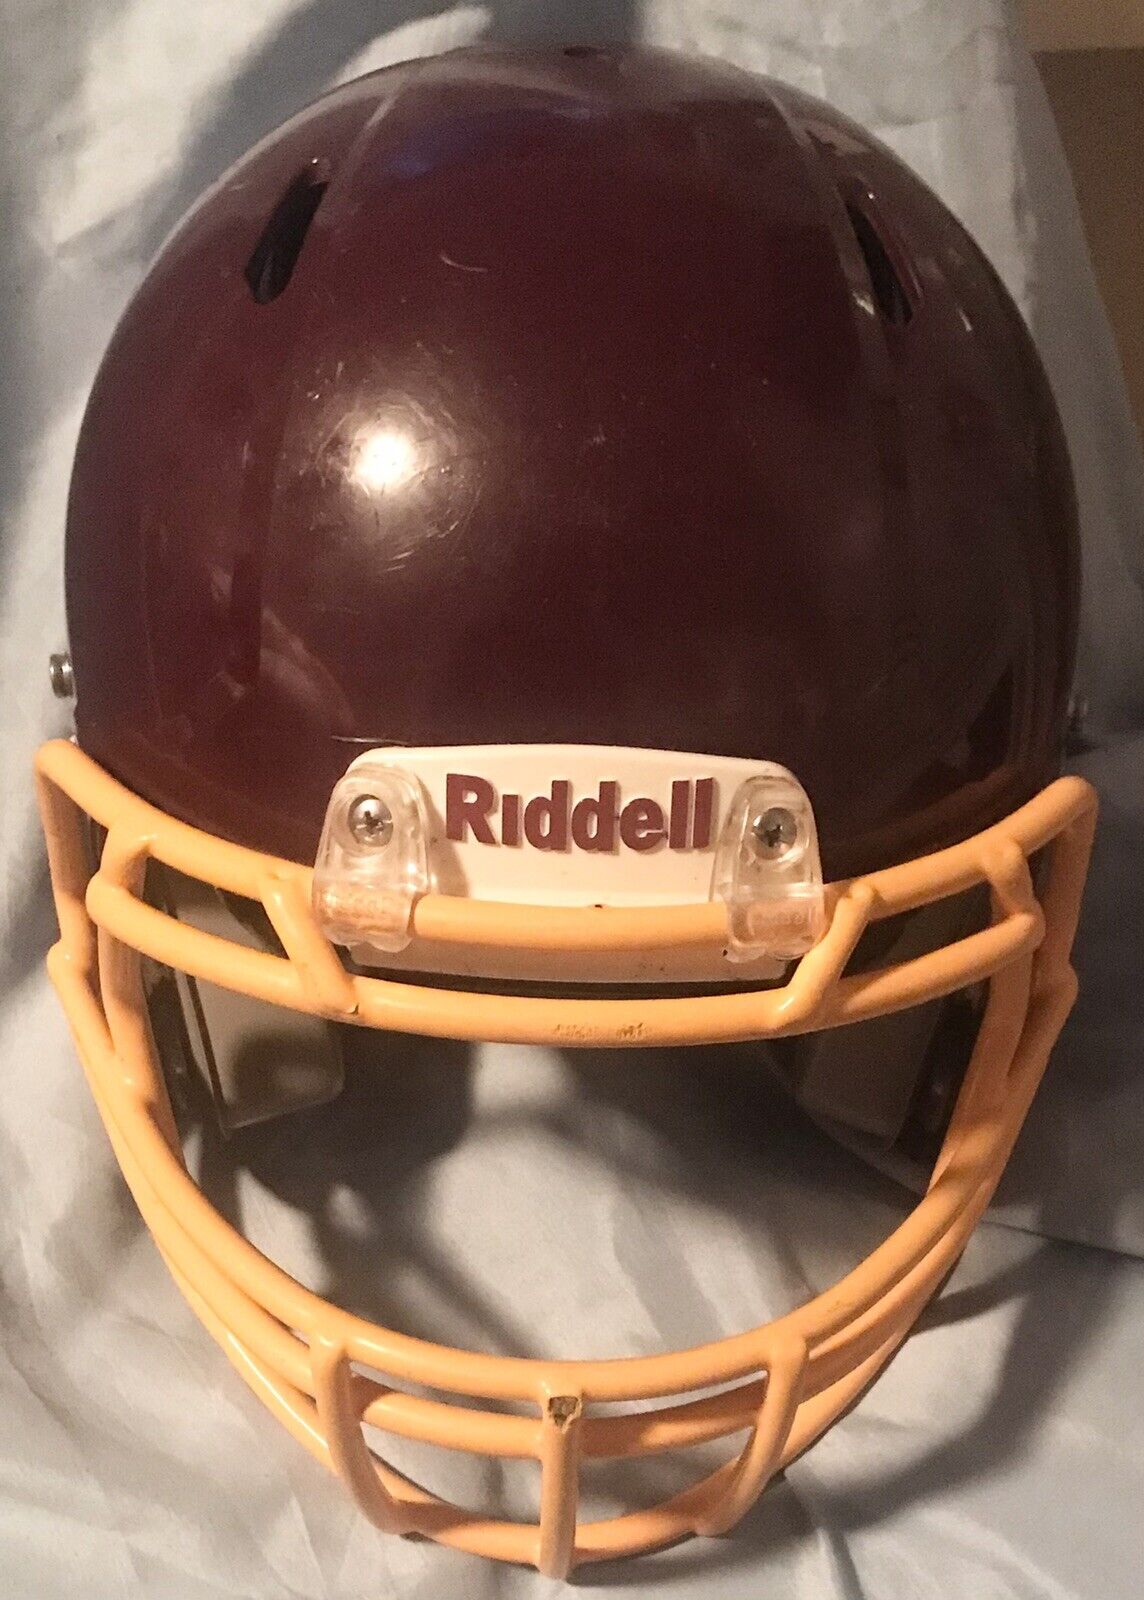 Riddell Youth Medium Victor Football Helmet Glossy Maroon Inflatable Adjust